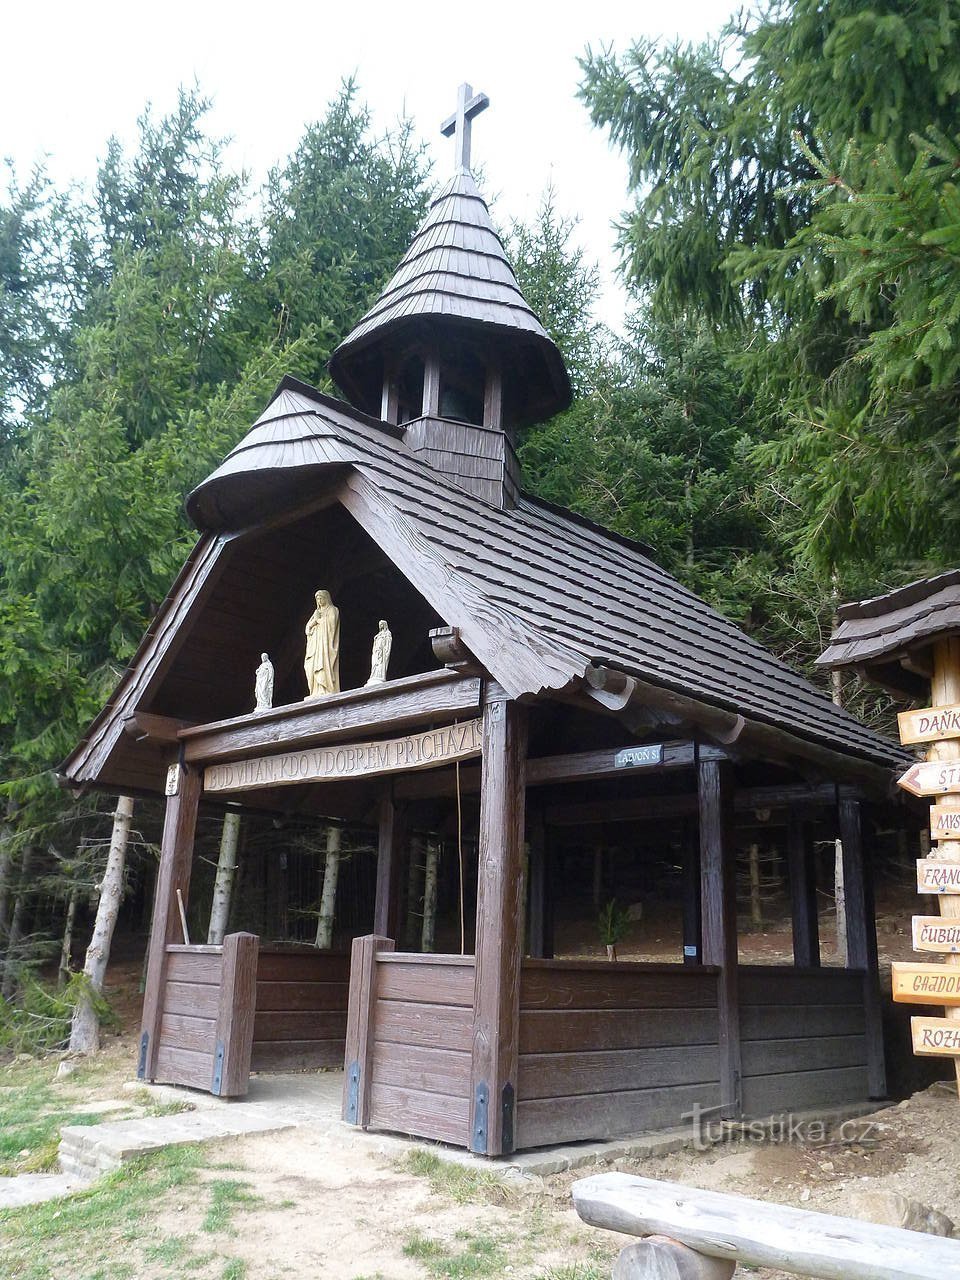 Eine hölzerne Kapelle mit einer Glocke und ungewöhnlich